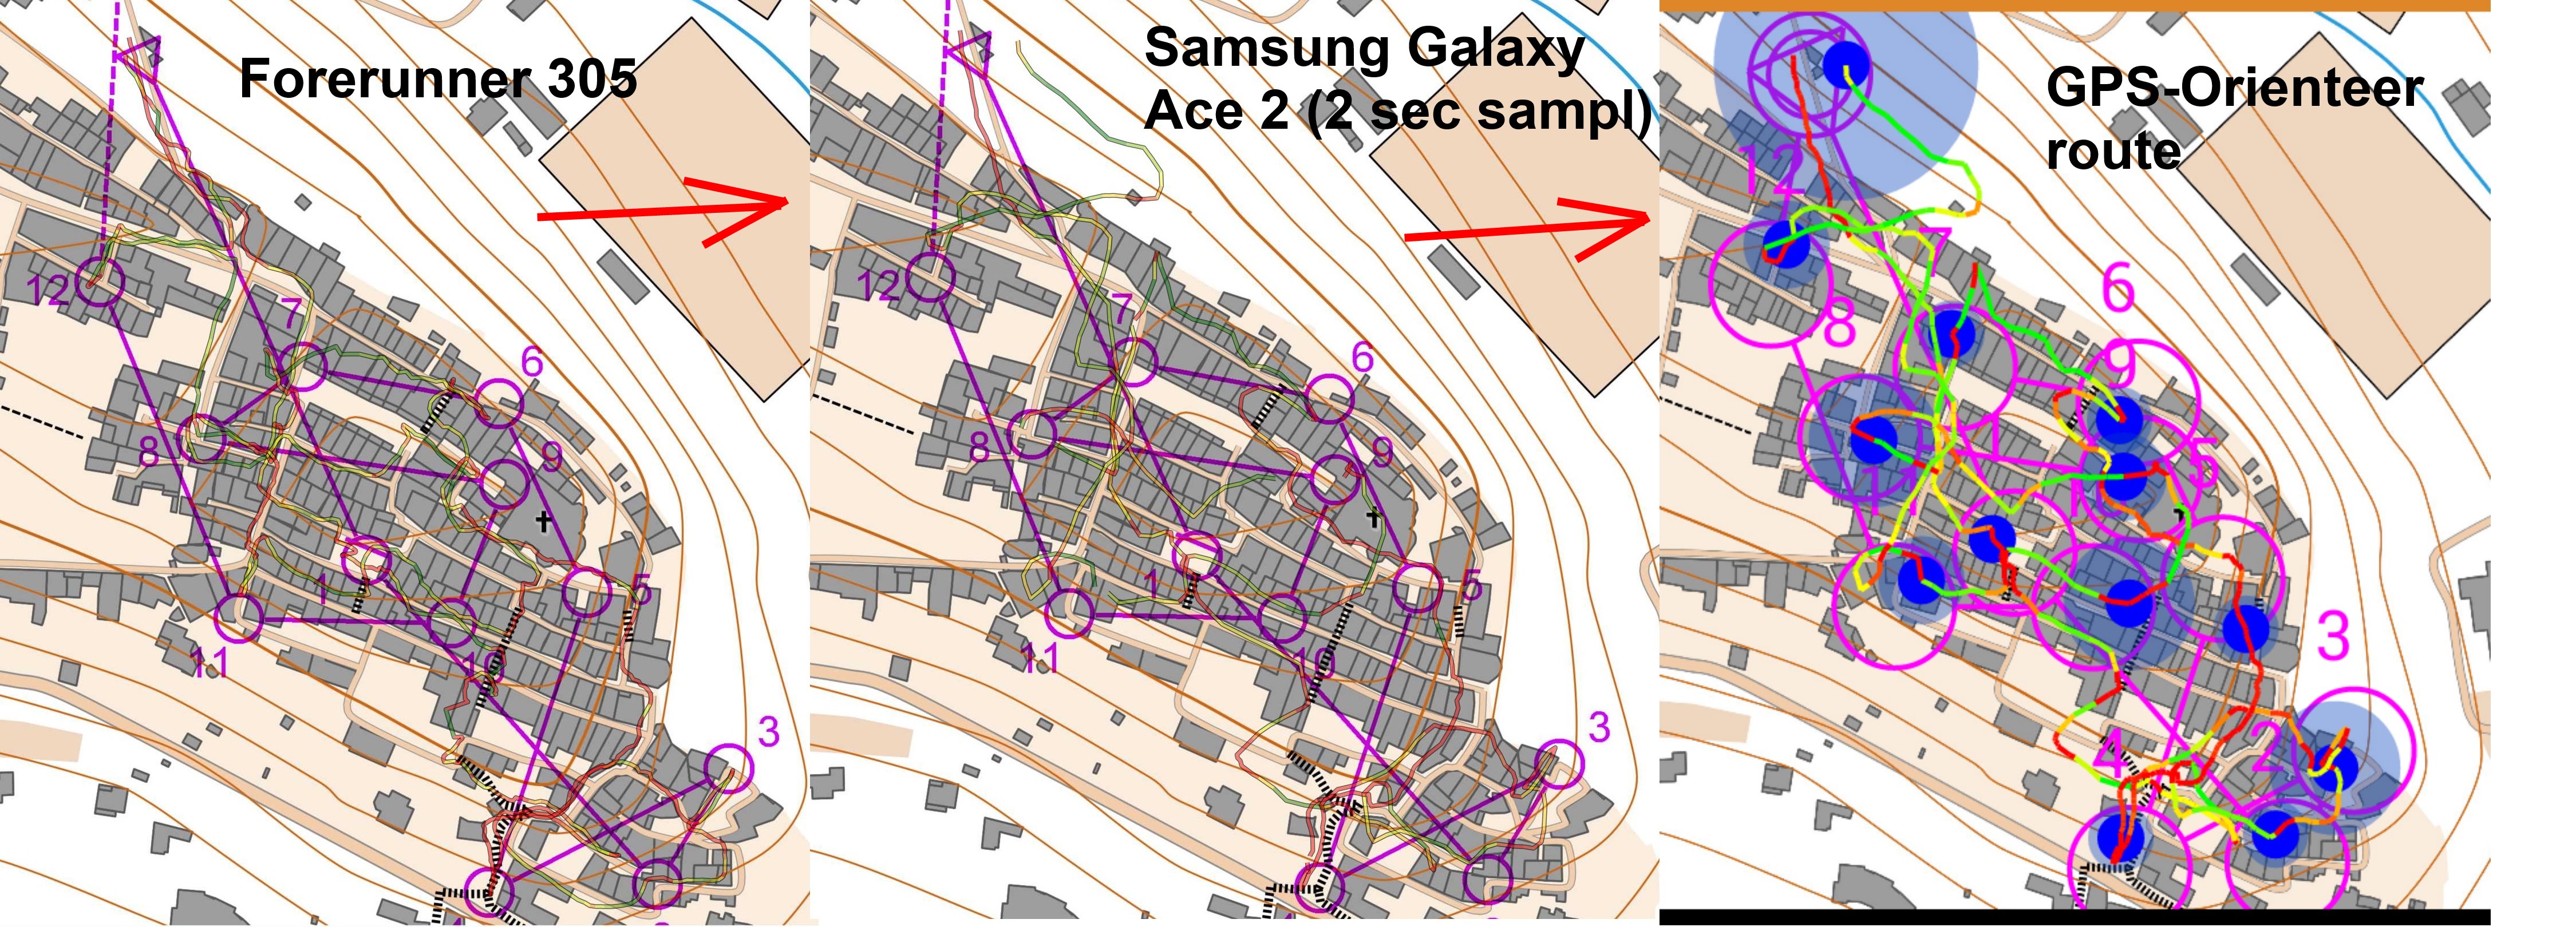 Test of GPS-Orienteering app in town (29.10.2013)